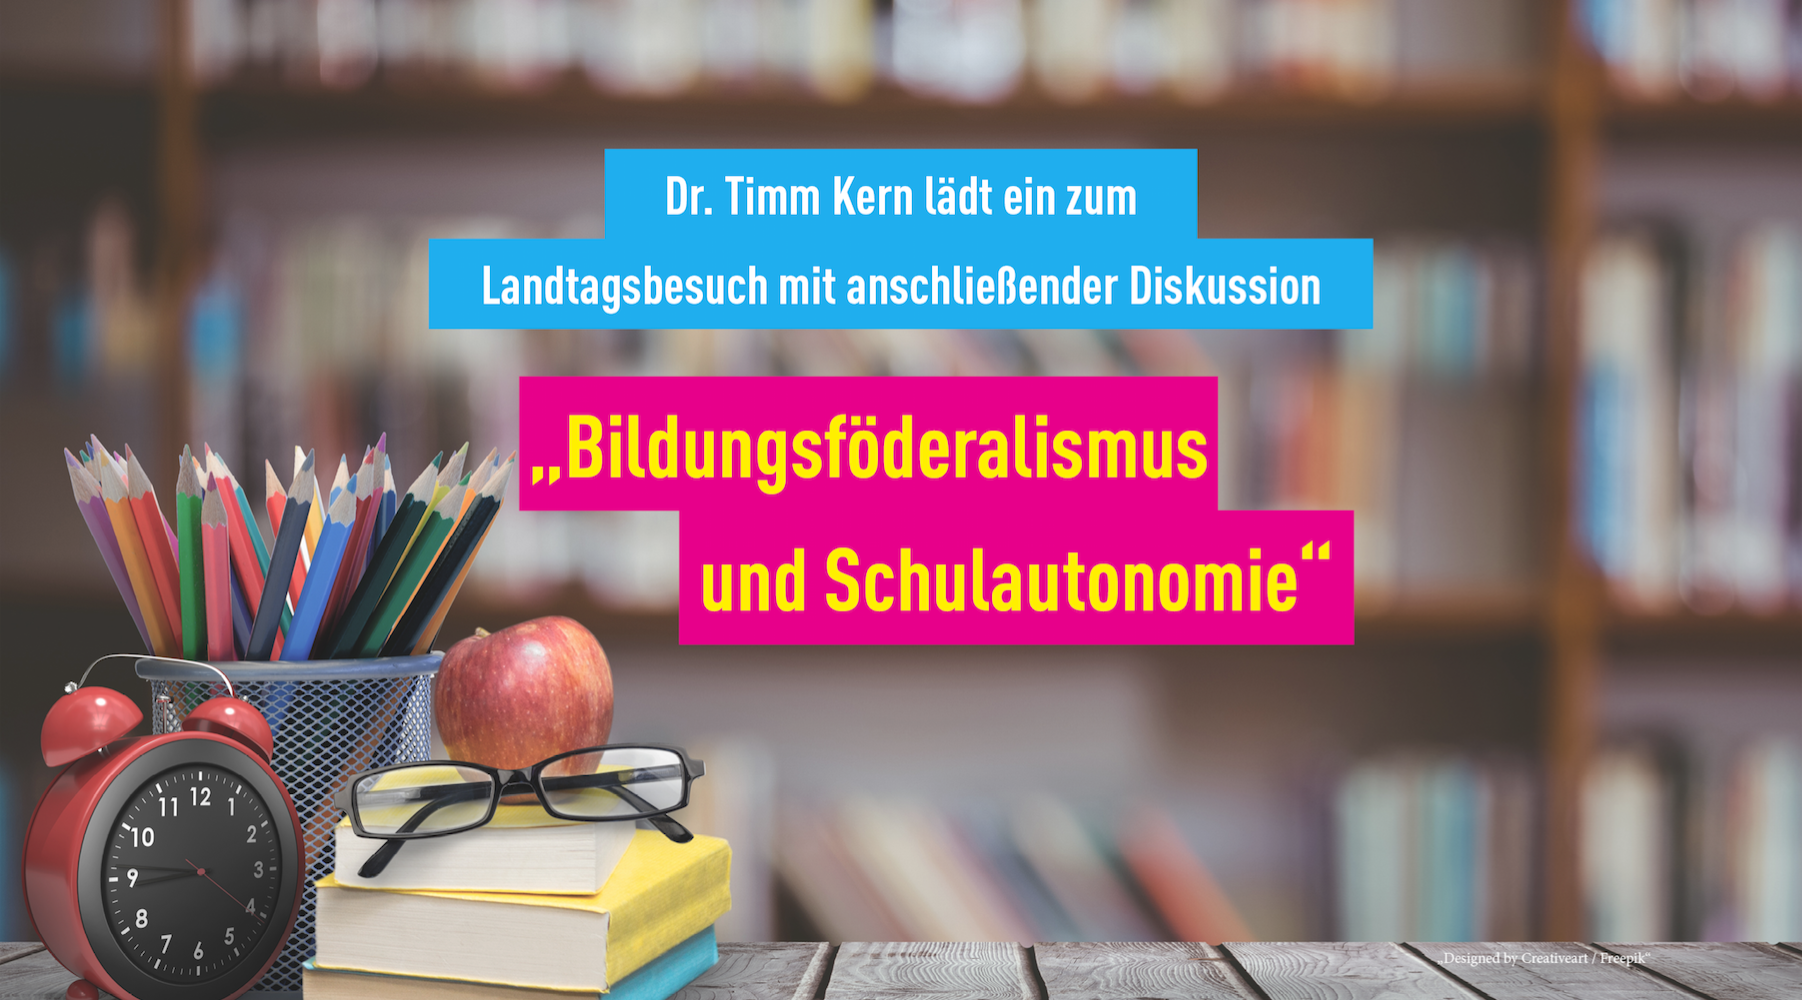 Dr. Timm Kern MdL | Einladung zu Landtagsbesuch und Diskussion